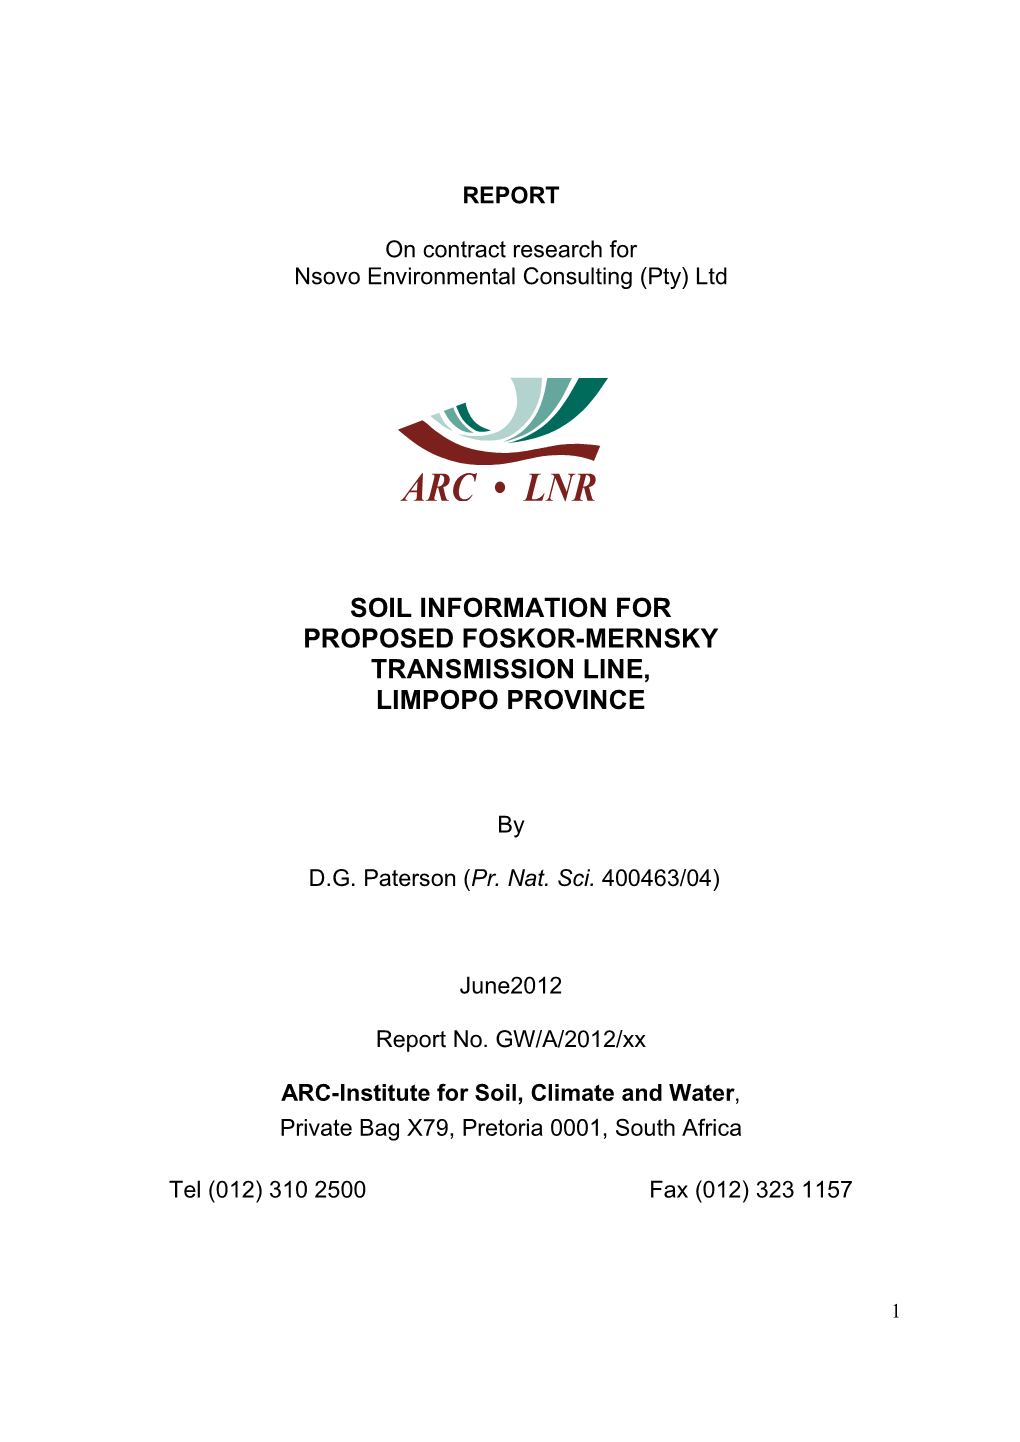 Soil Information for Proposed Foskor-Mernsky Transmission Line, Limpopo Province